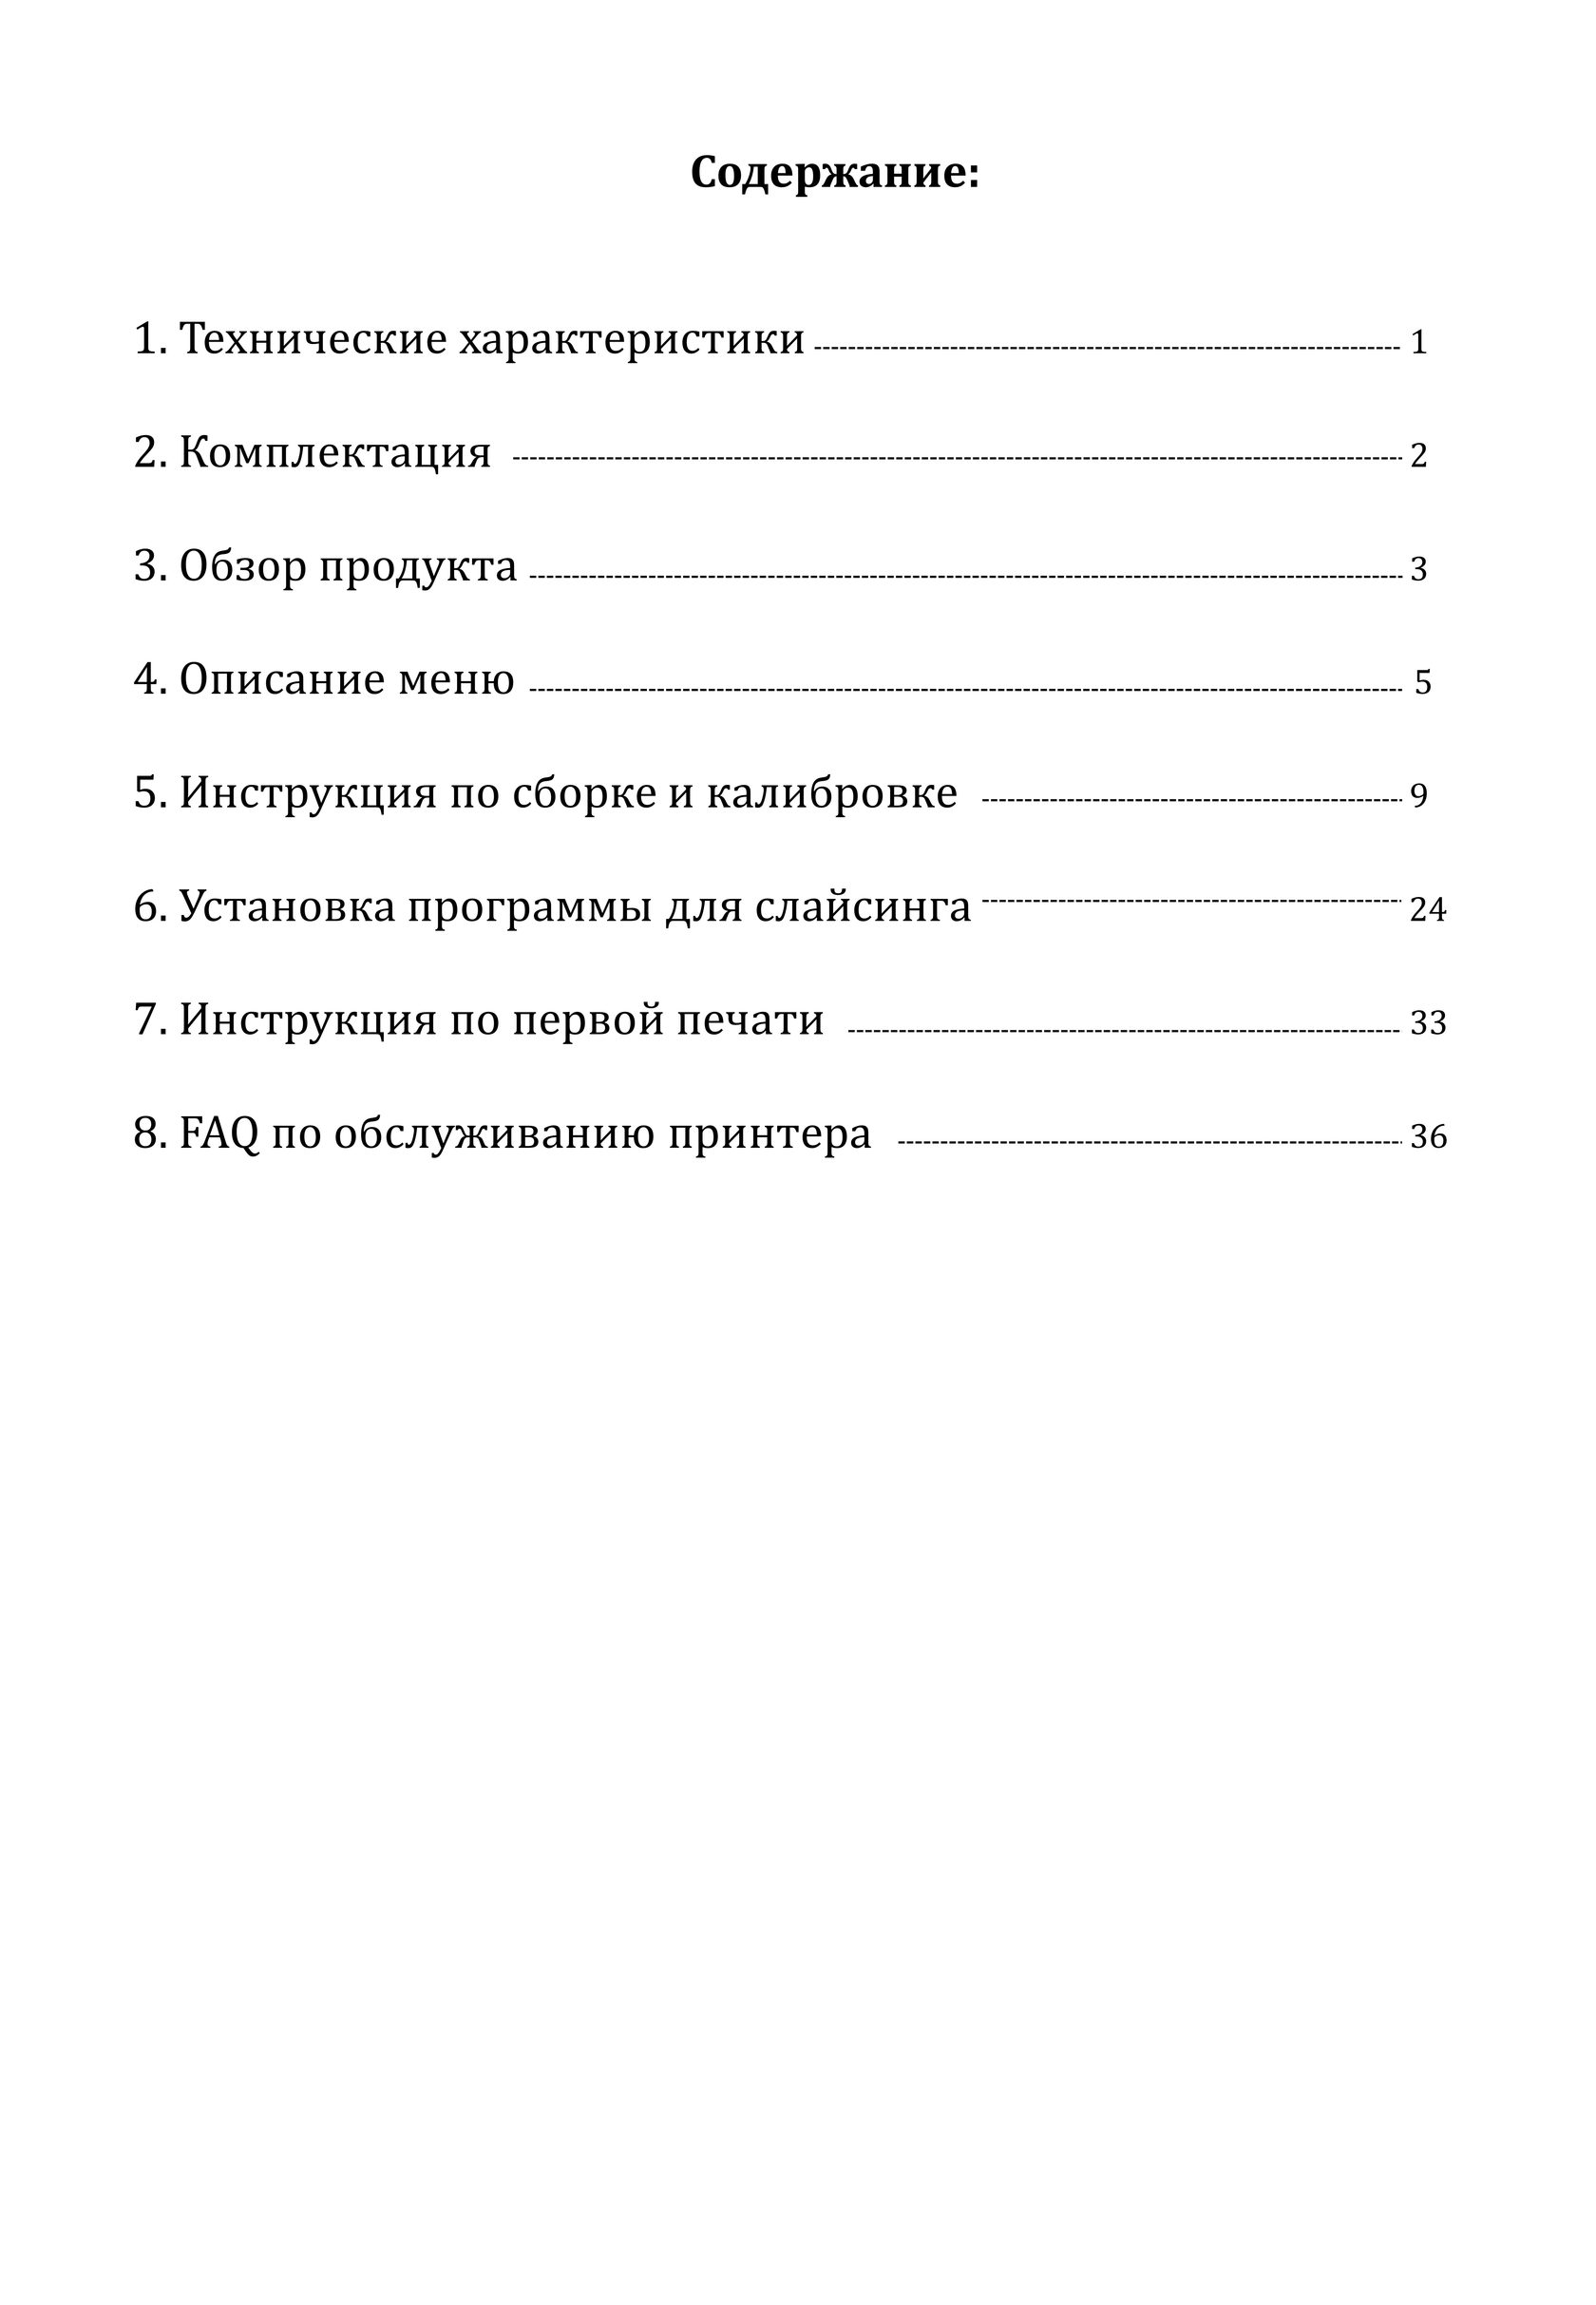 Инструкция Anycubic Formax (4Max PRO) на русском языке